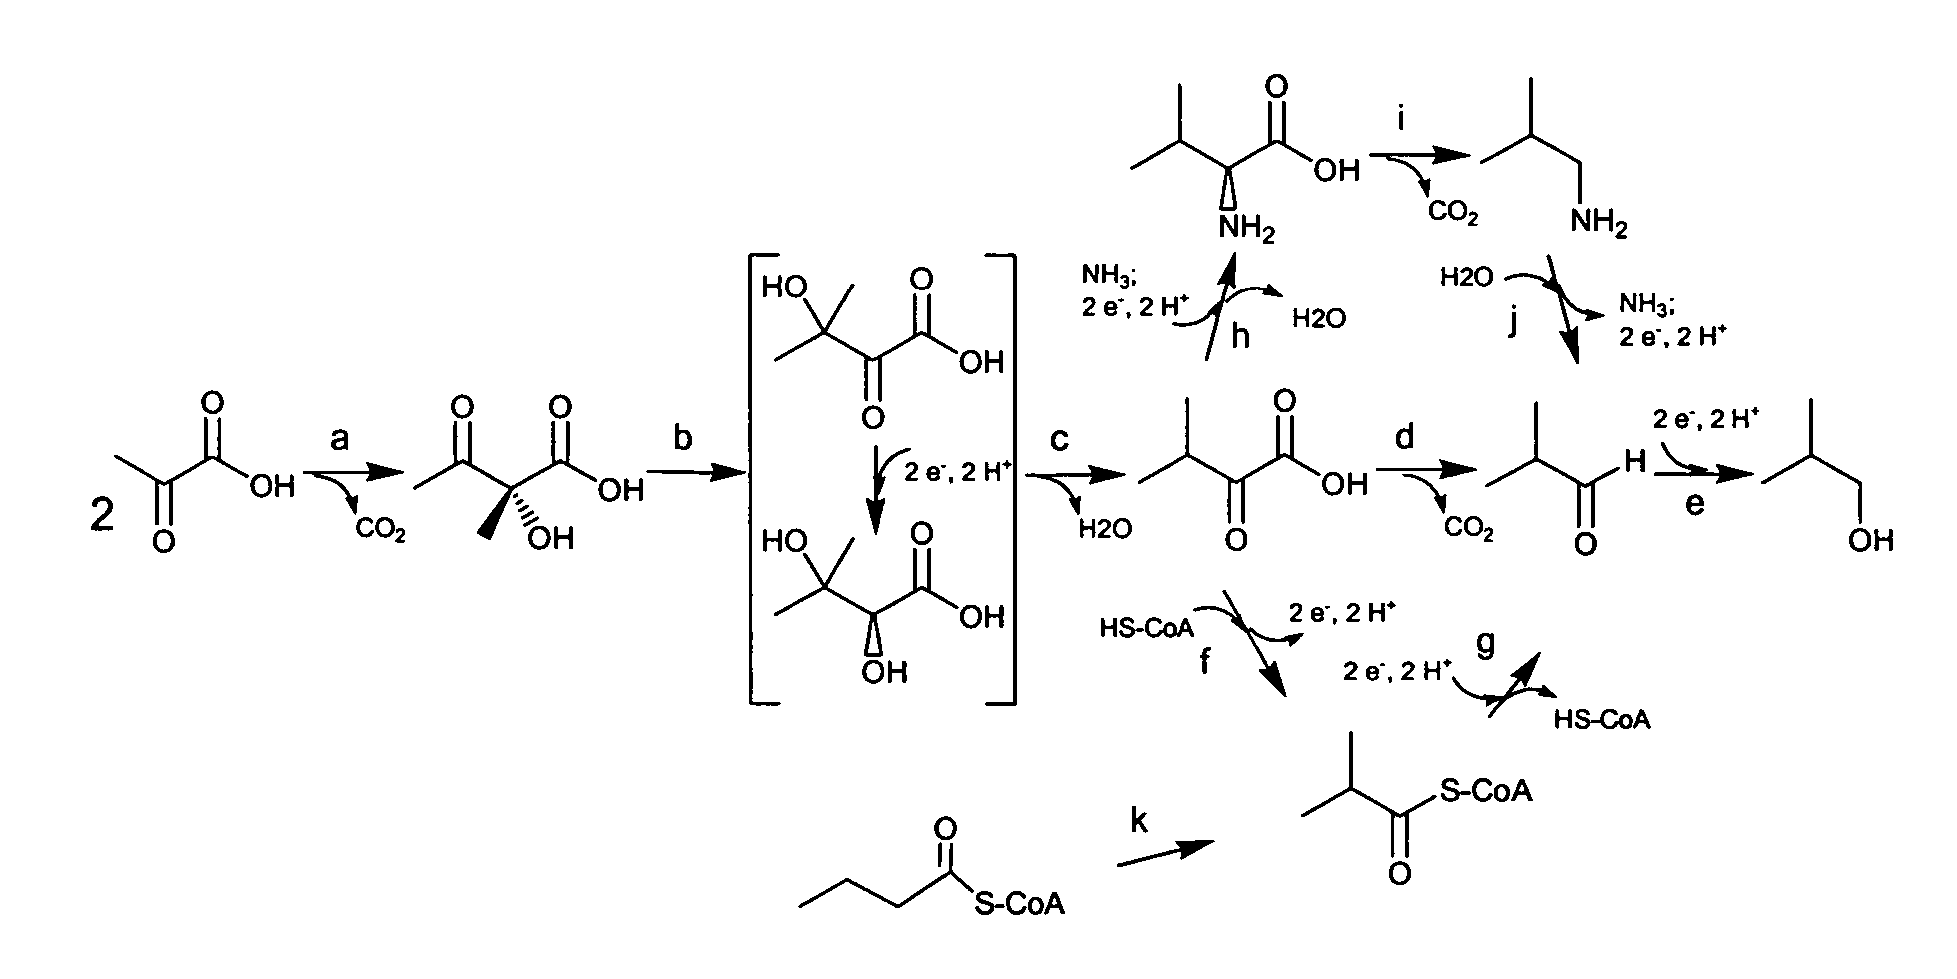 Fermentive production of four carbon alcohols